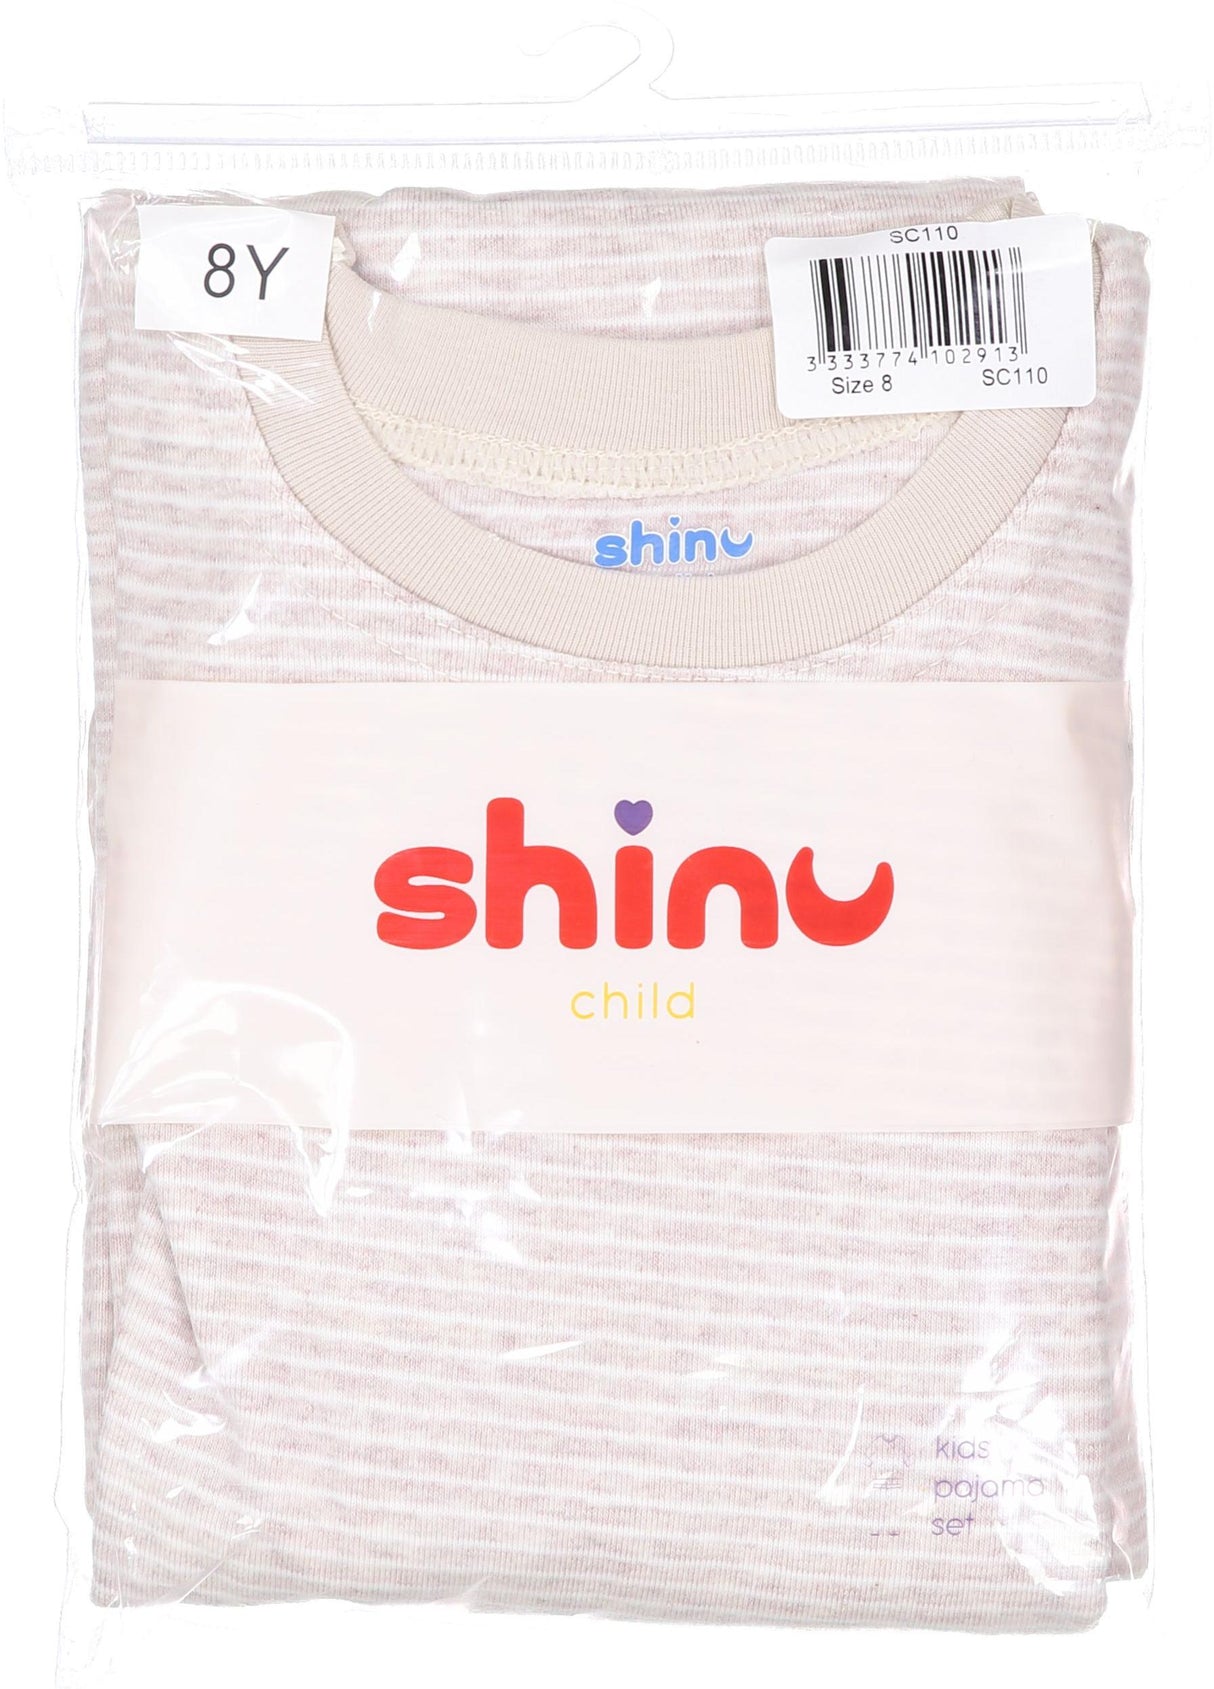 Shinu Boys Girls Striped Cotton Pajamas - SC110